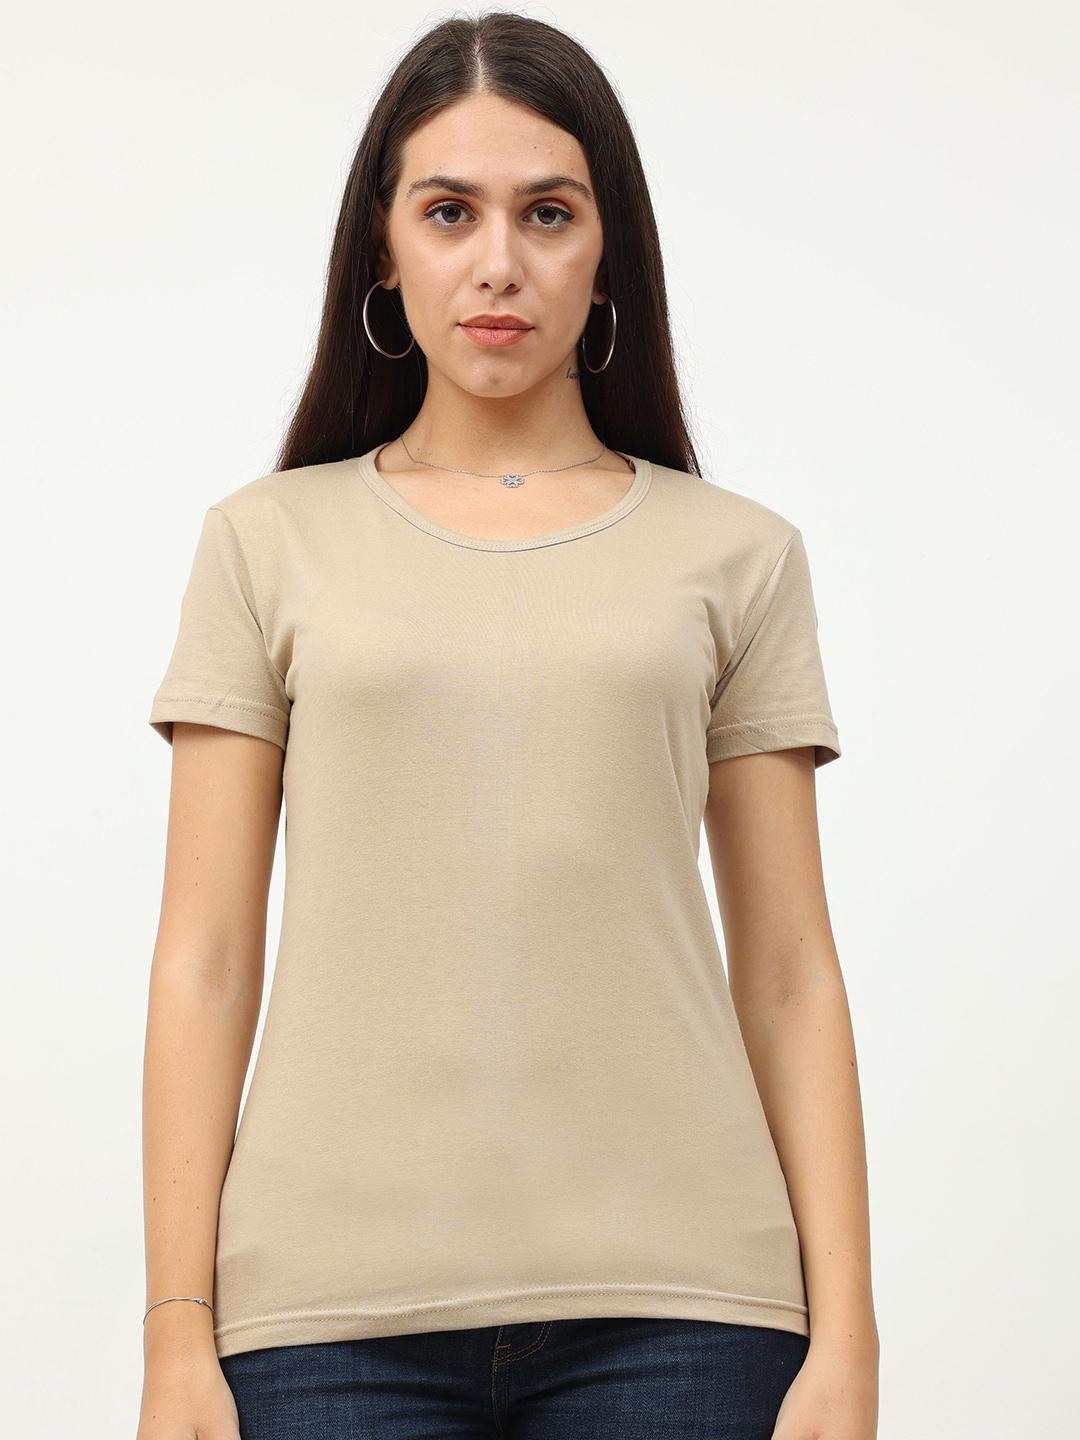 fleximaa-women-beige-t-shirt